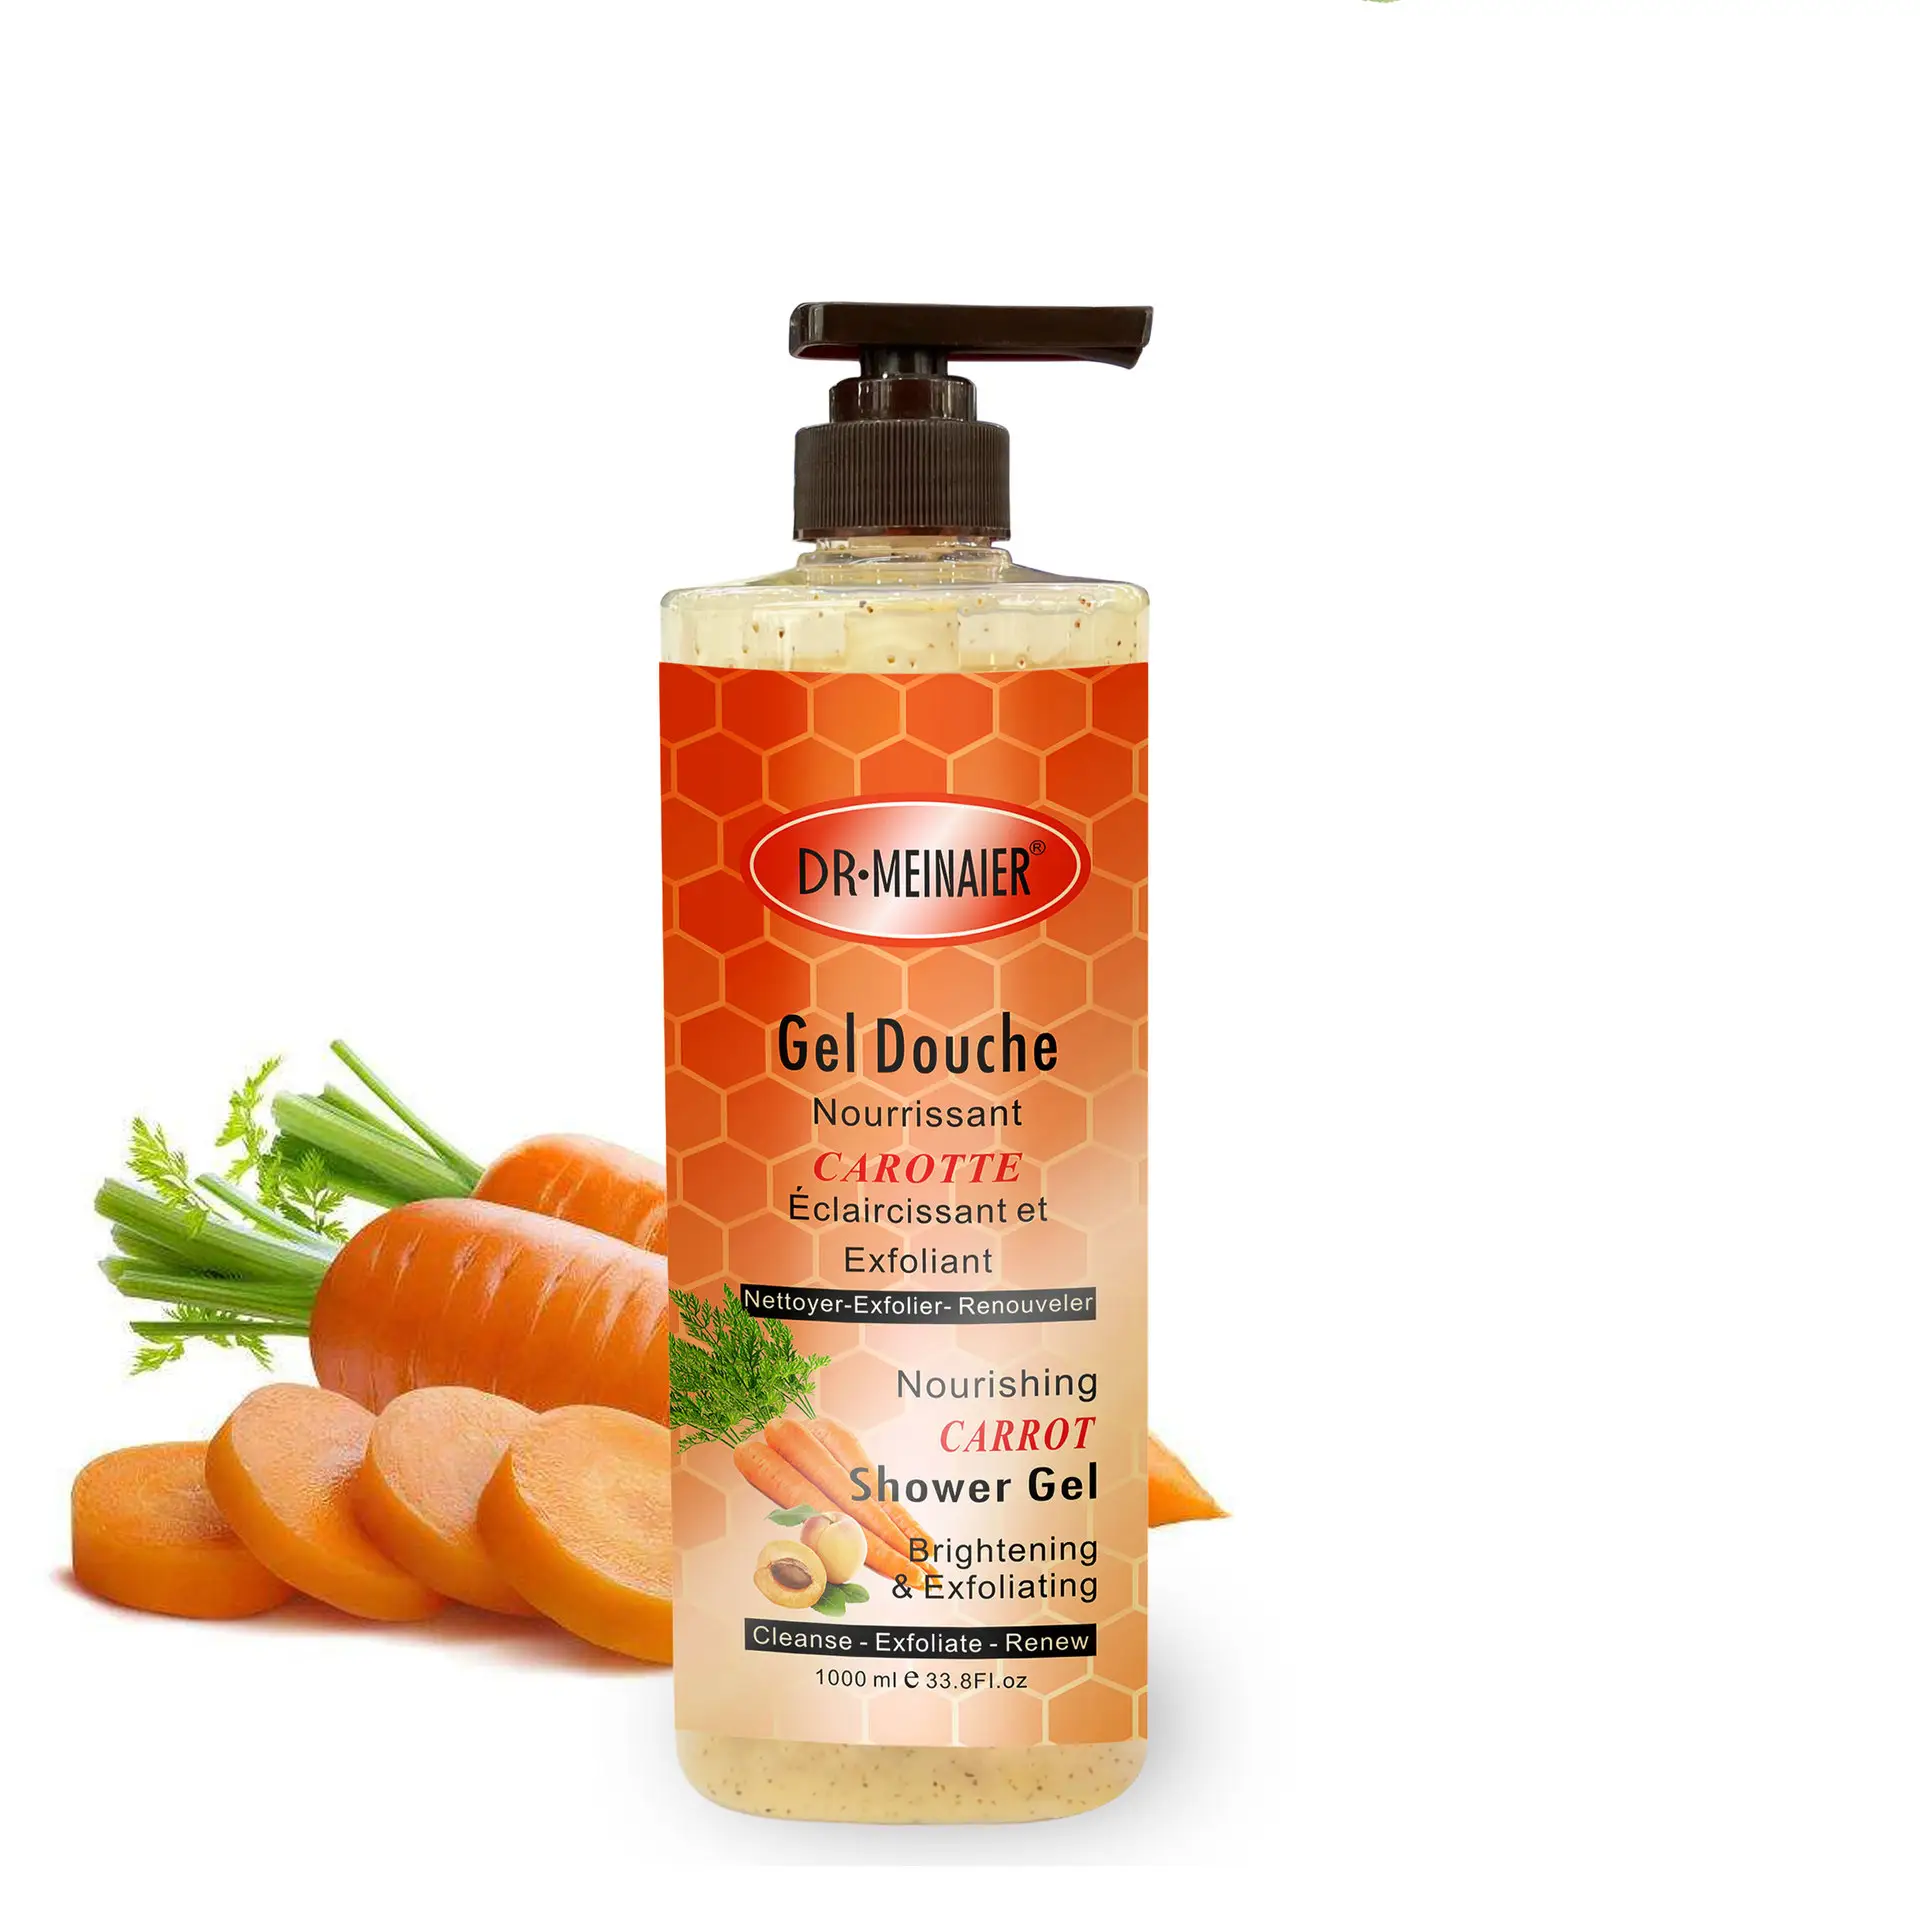 Huile de carotte au collagène de marque privée, crème corporelle hydratante et blanchissante avec réparation apaisante, Lotion corporelle éclaircissante de haute qualité